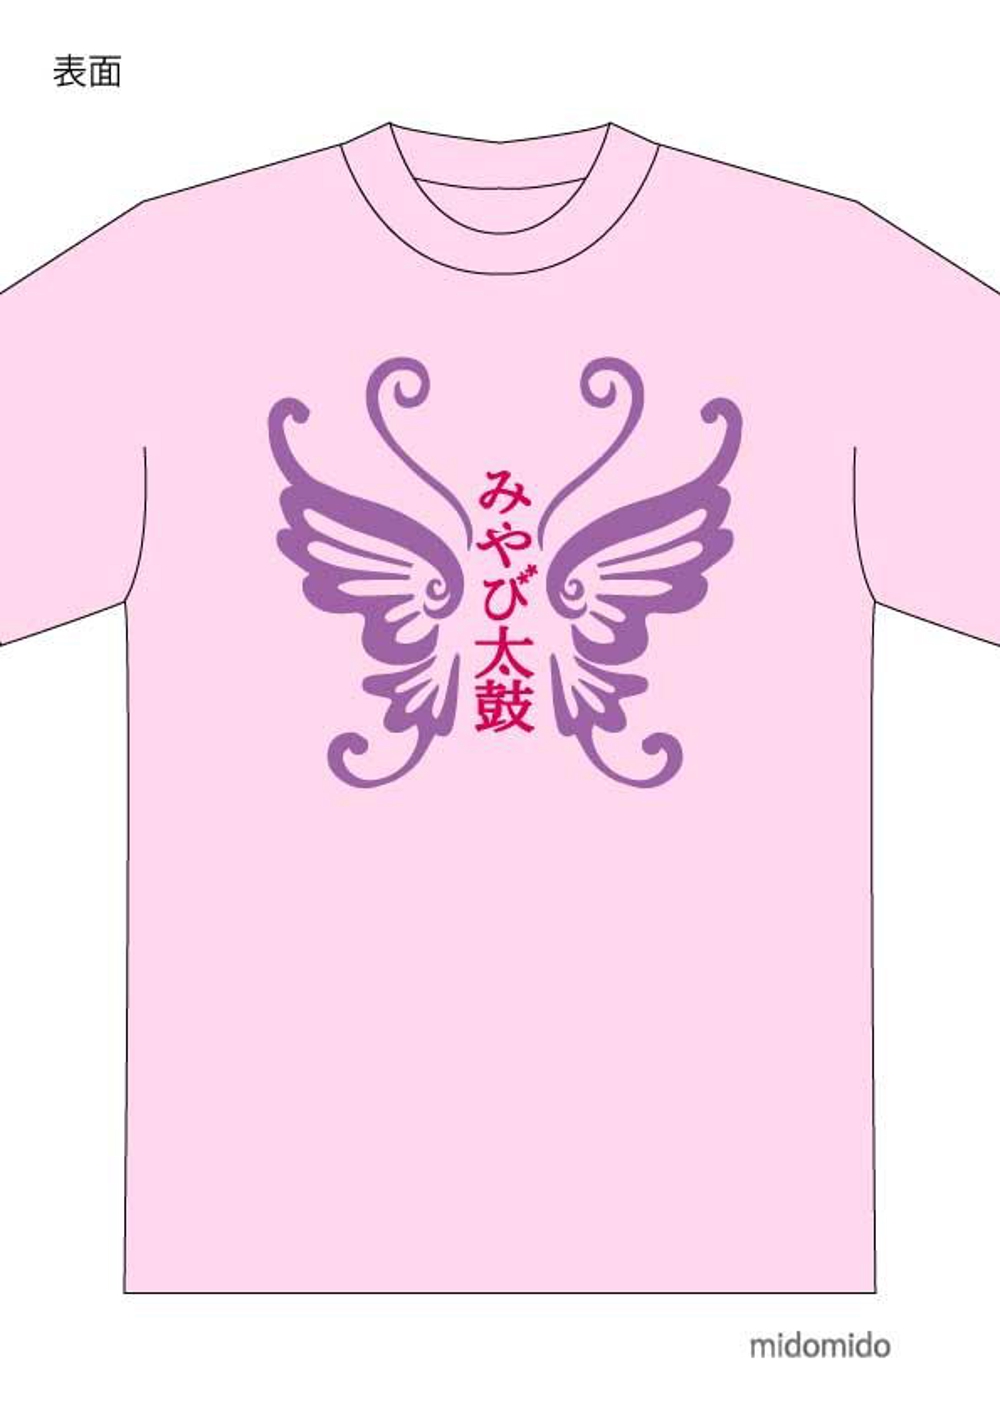 夏祭りの女子太鼓チームのTシャツデザイン